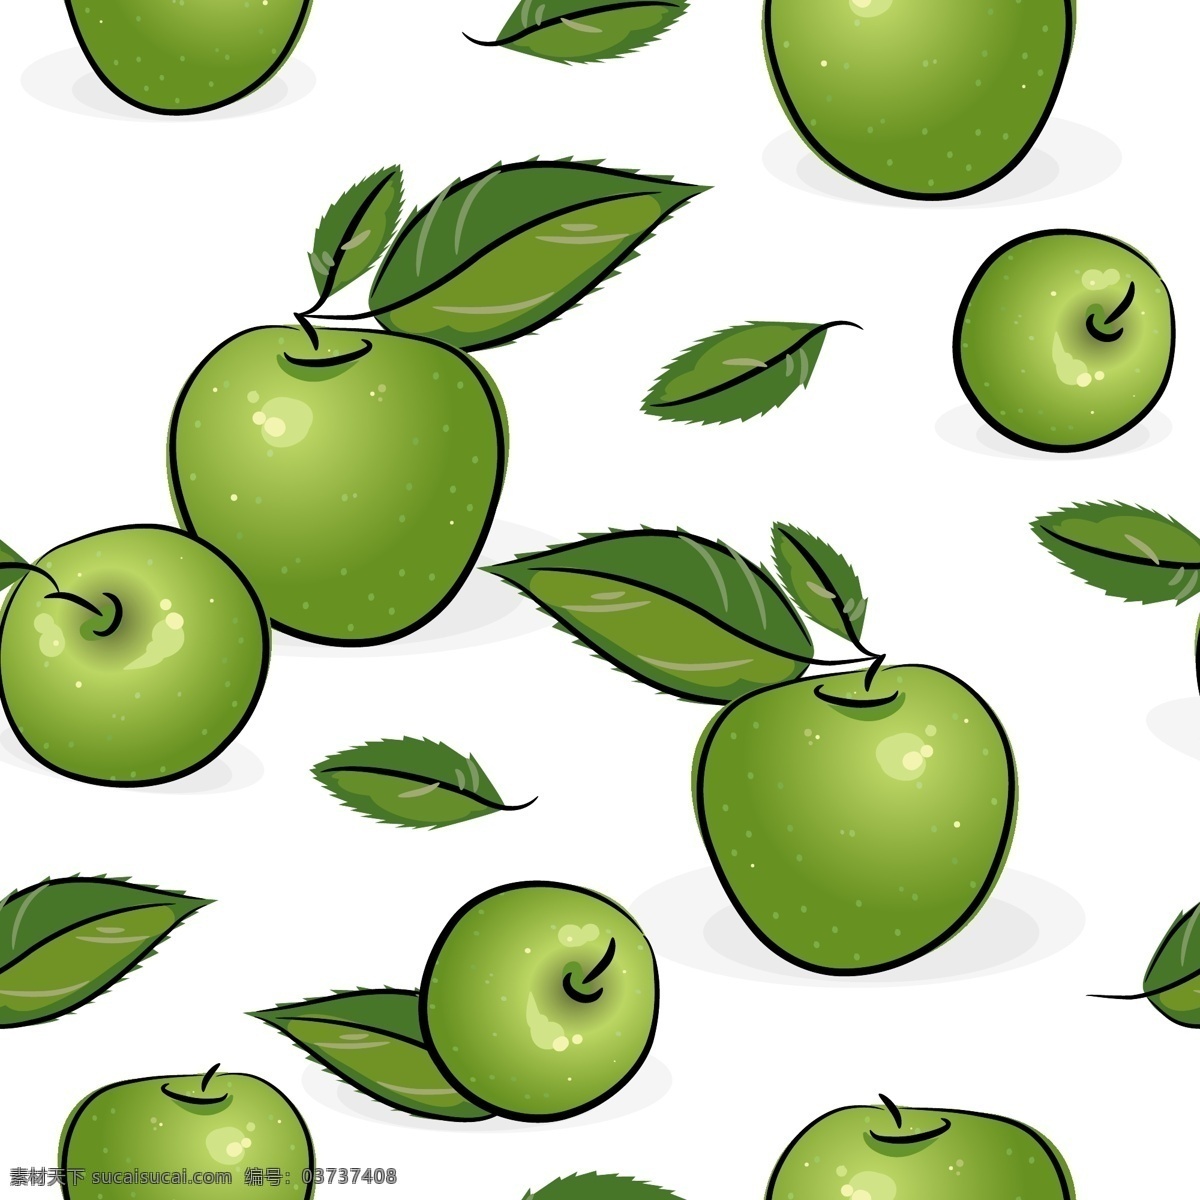 手绘苹果背景 苹果 水果 绿苹果 手绘 营养 健康 背景 底纹 矢量 水果矢量 生物世界